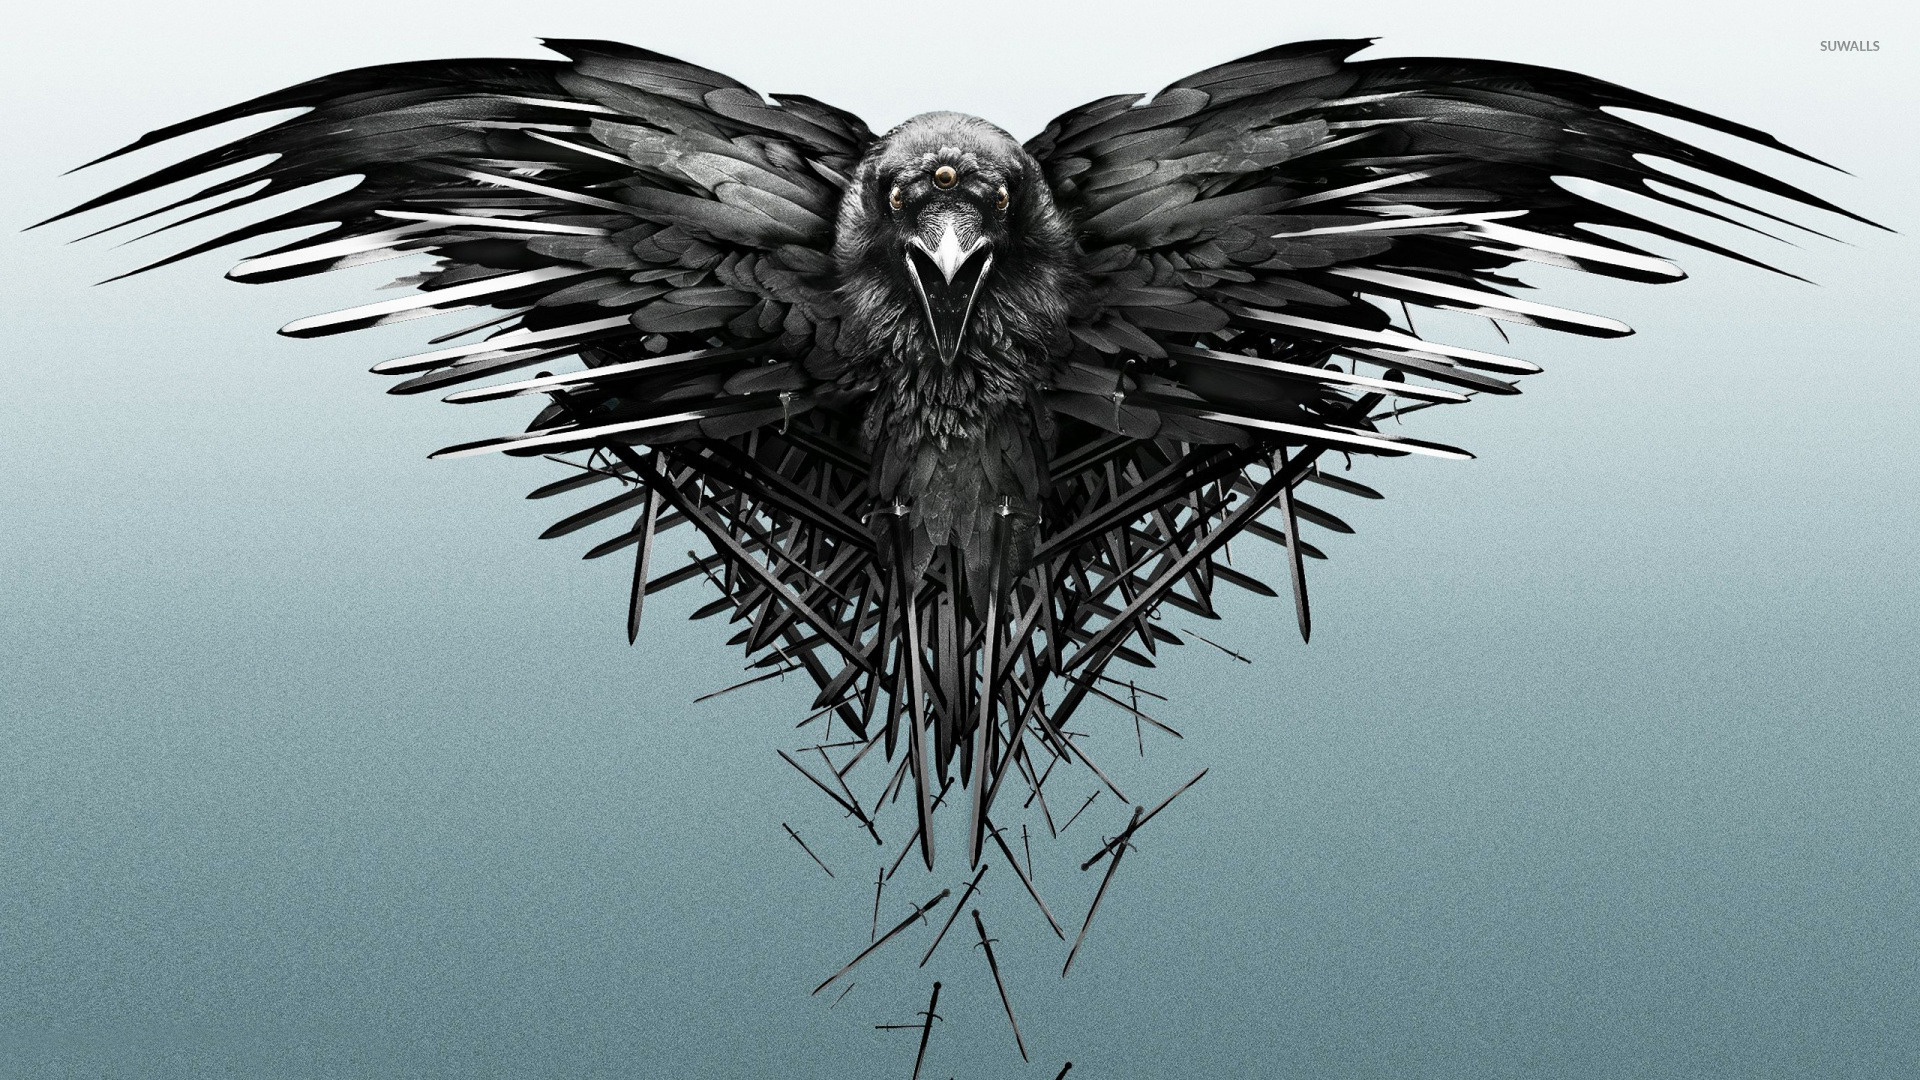 game of thrones wallpaper,bird,bird of prey,eagle,wing,accipitriformes